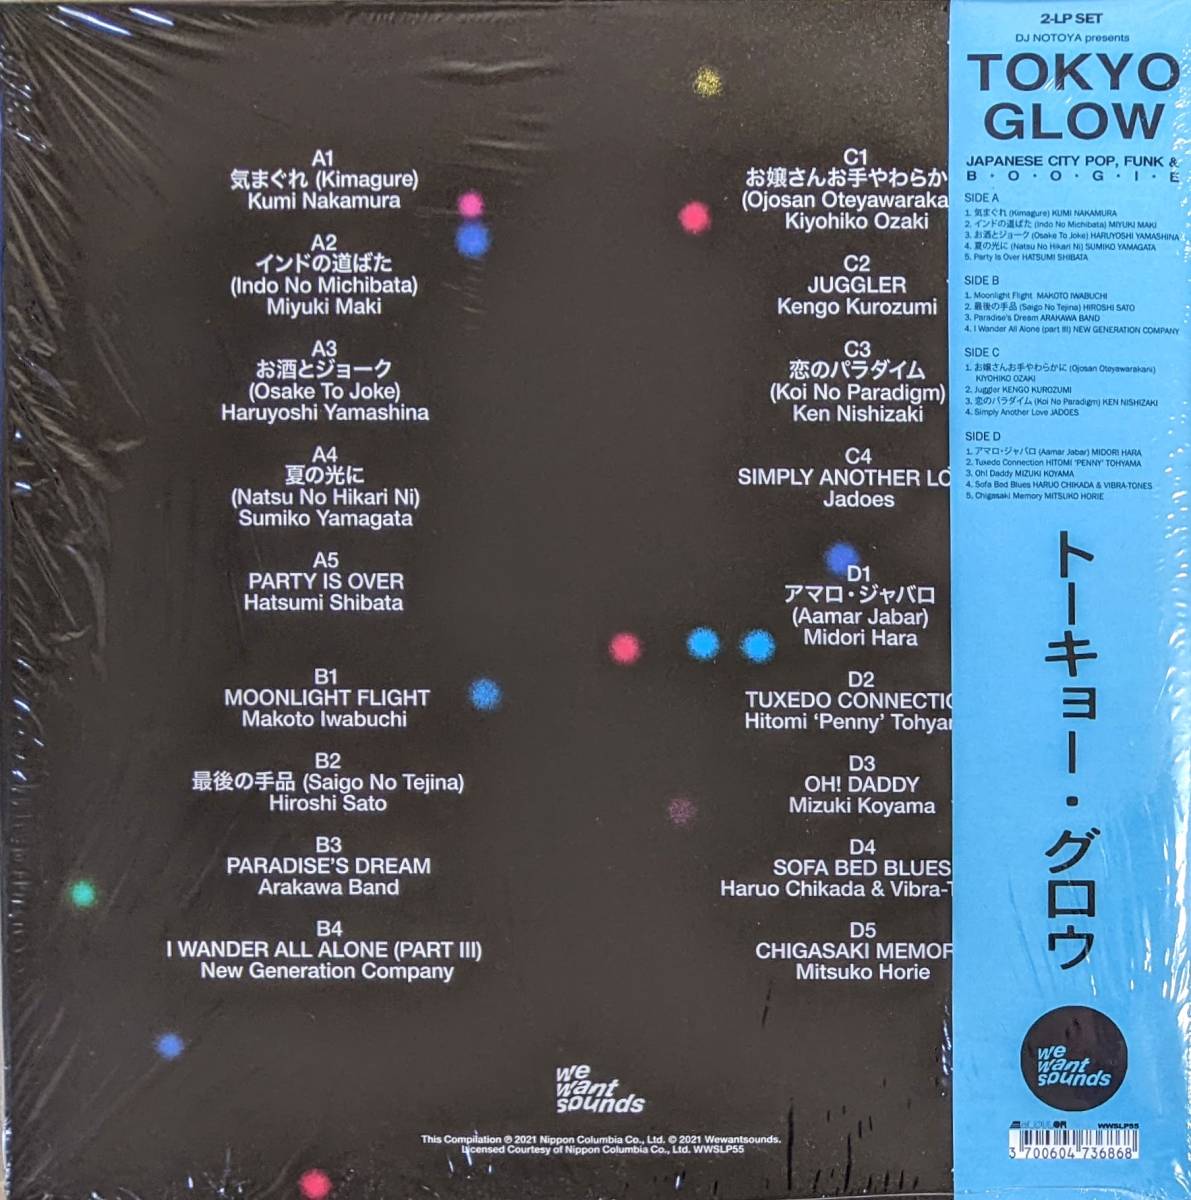 DJ Notoya - Tokyo Glow (Featuring 中村久美,牧ミユキ,山科晴義,やまがたすみこ,しばたはつみ他) 限定リマスター二枚組アナログ・レコード